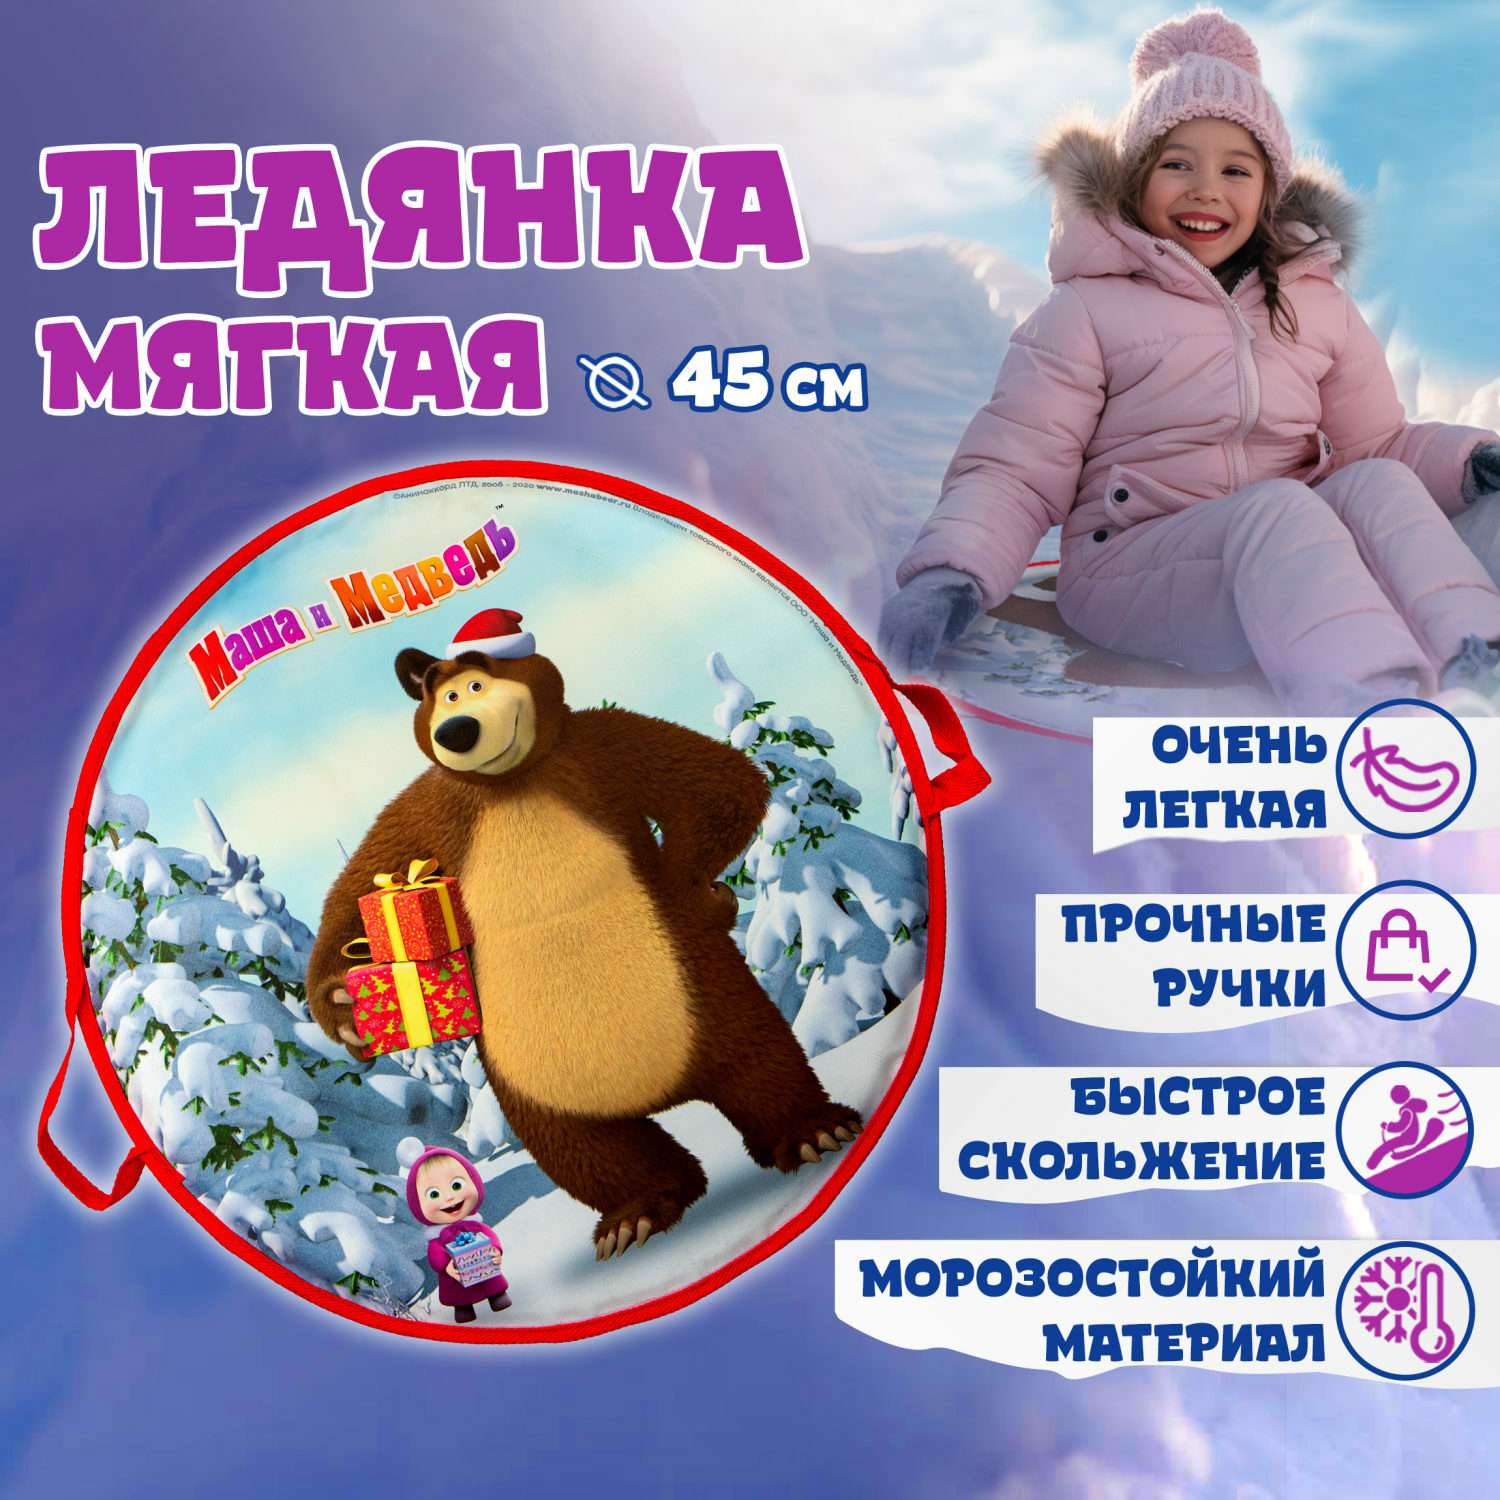 Мягкая игрушка Плюшевая книжка Маша и Медведь Simba в ассортименте (цвет по наличию)